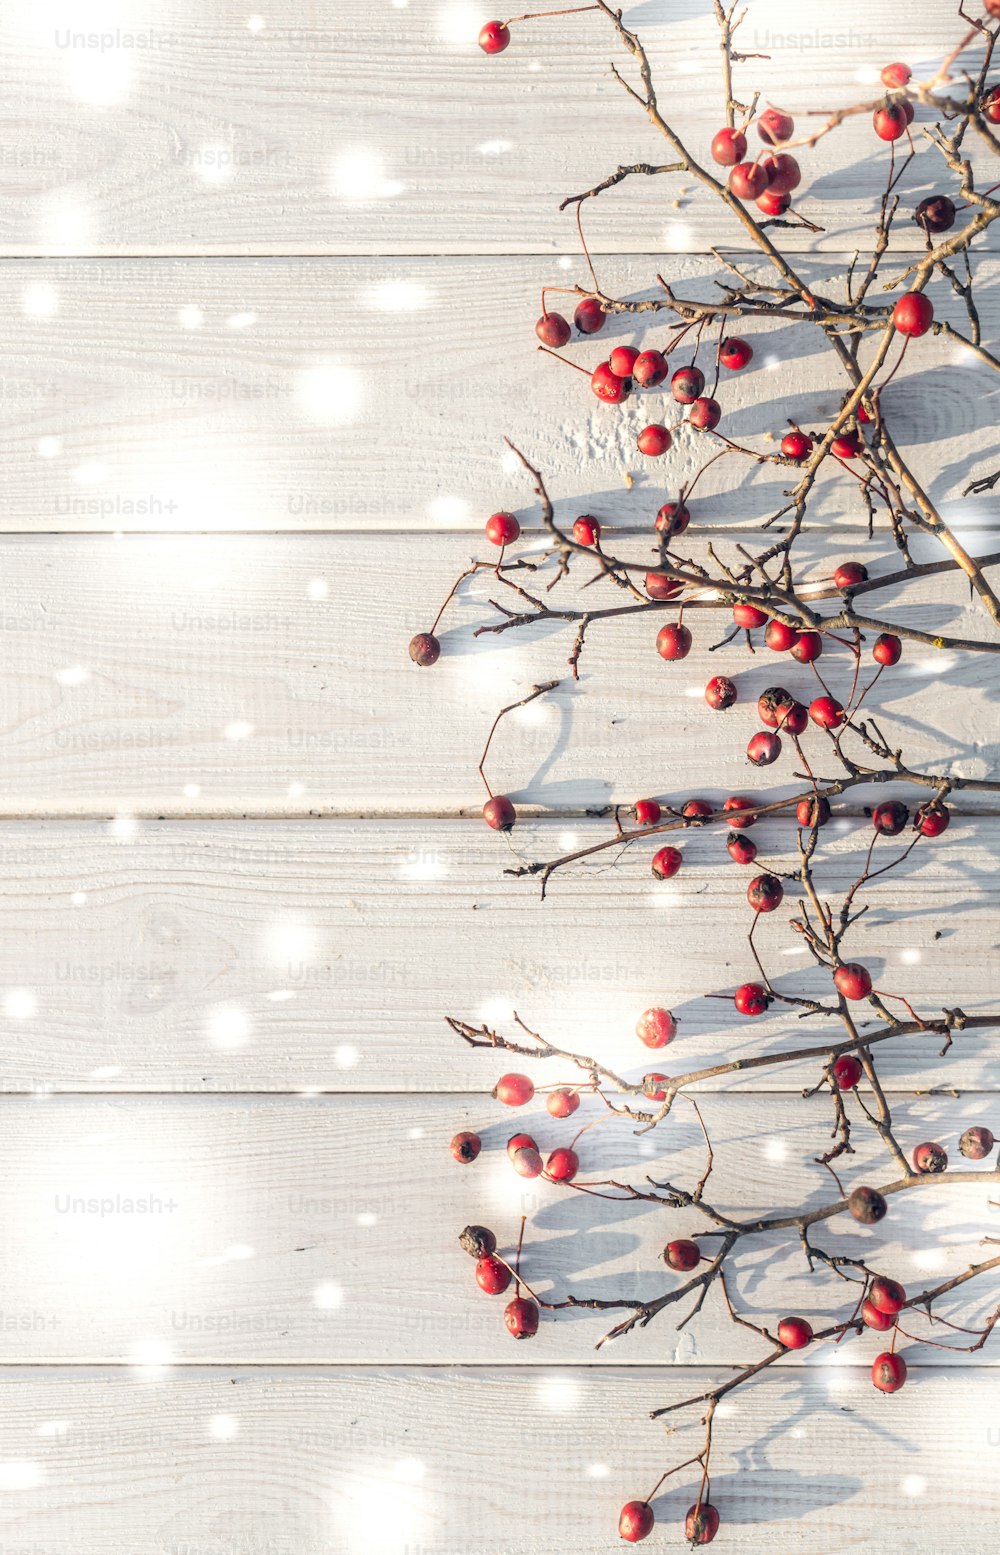 겨울 축제 배경입니다. 우아한 화이트 보드의 배경에 잘 익은 산사 나무 열매의 밝은 빨간색 열매. 크리스마스와 새해 인사말 카드의 장식 배경